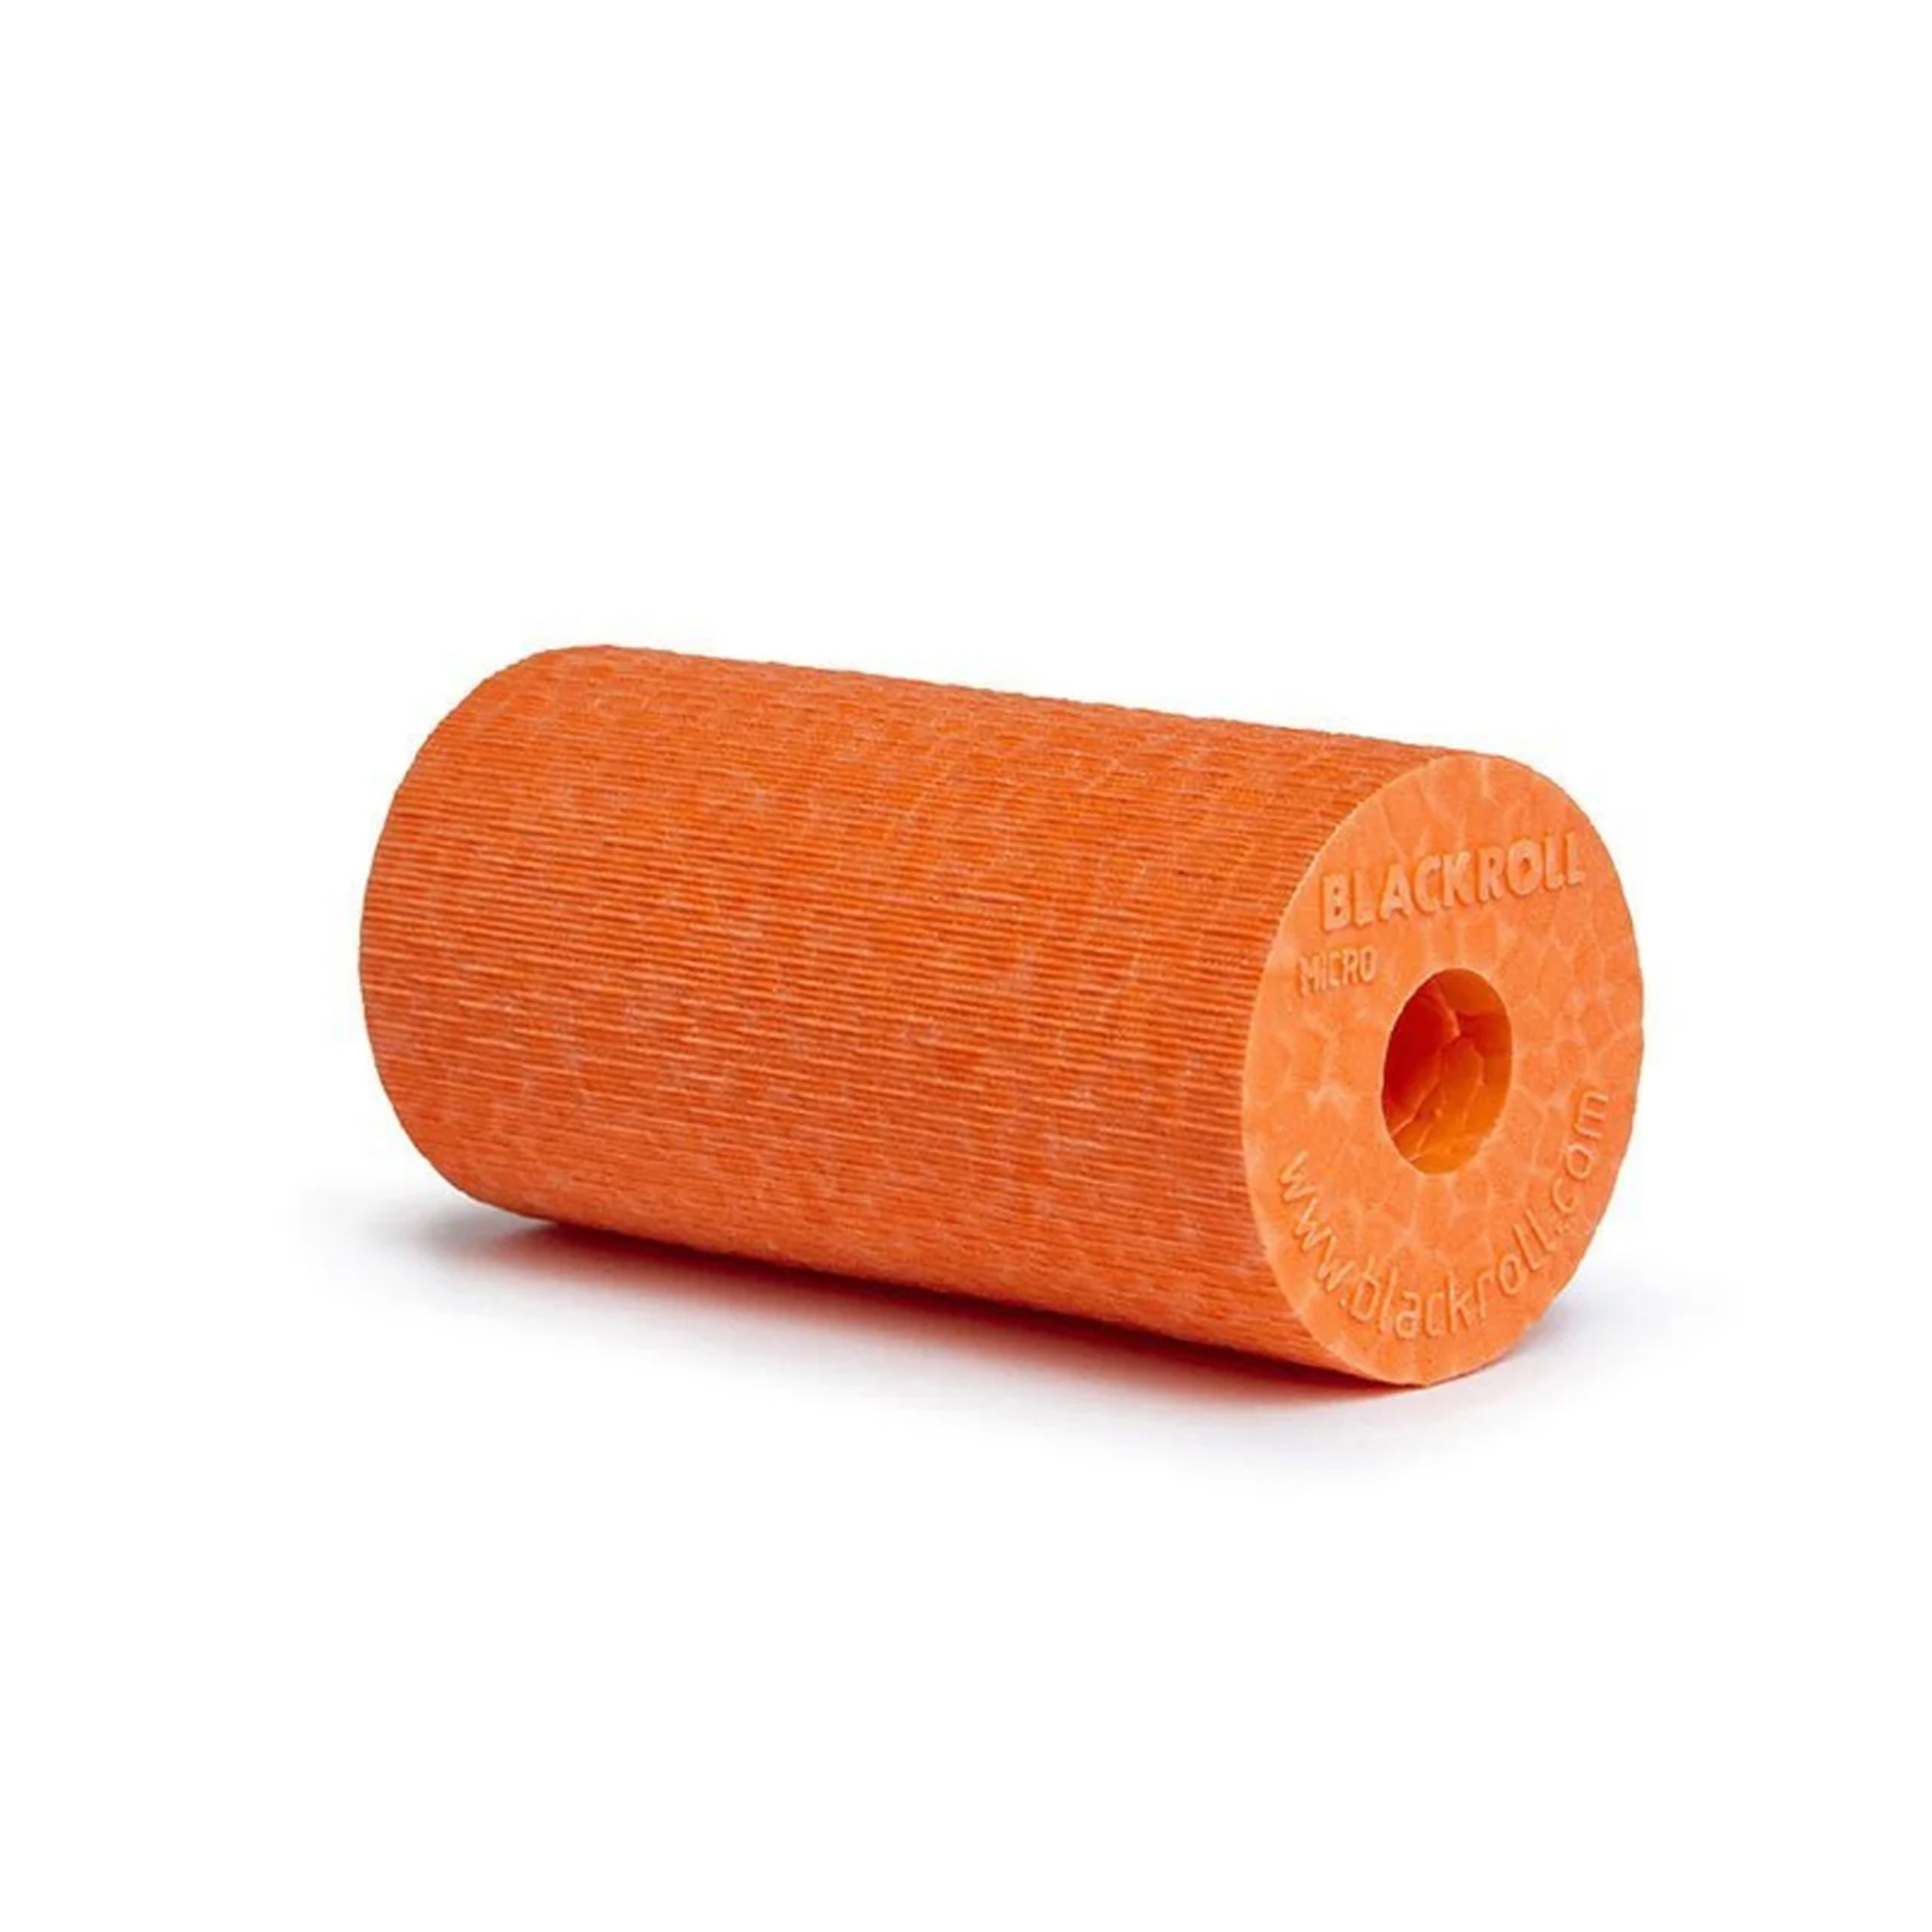 Brug Blackroll Micro Foam Roller Orange - 6x3 cm til en forbedret oplevelse